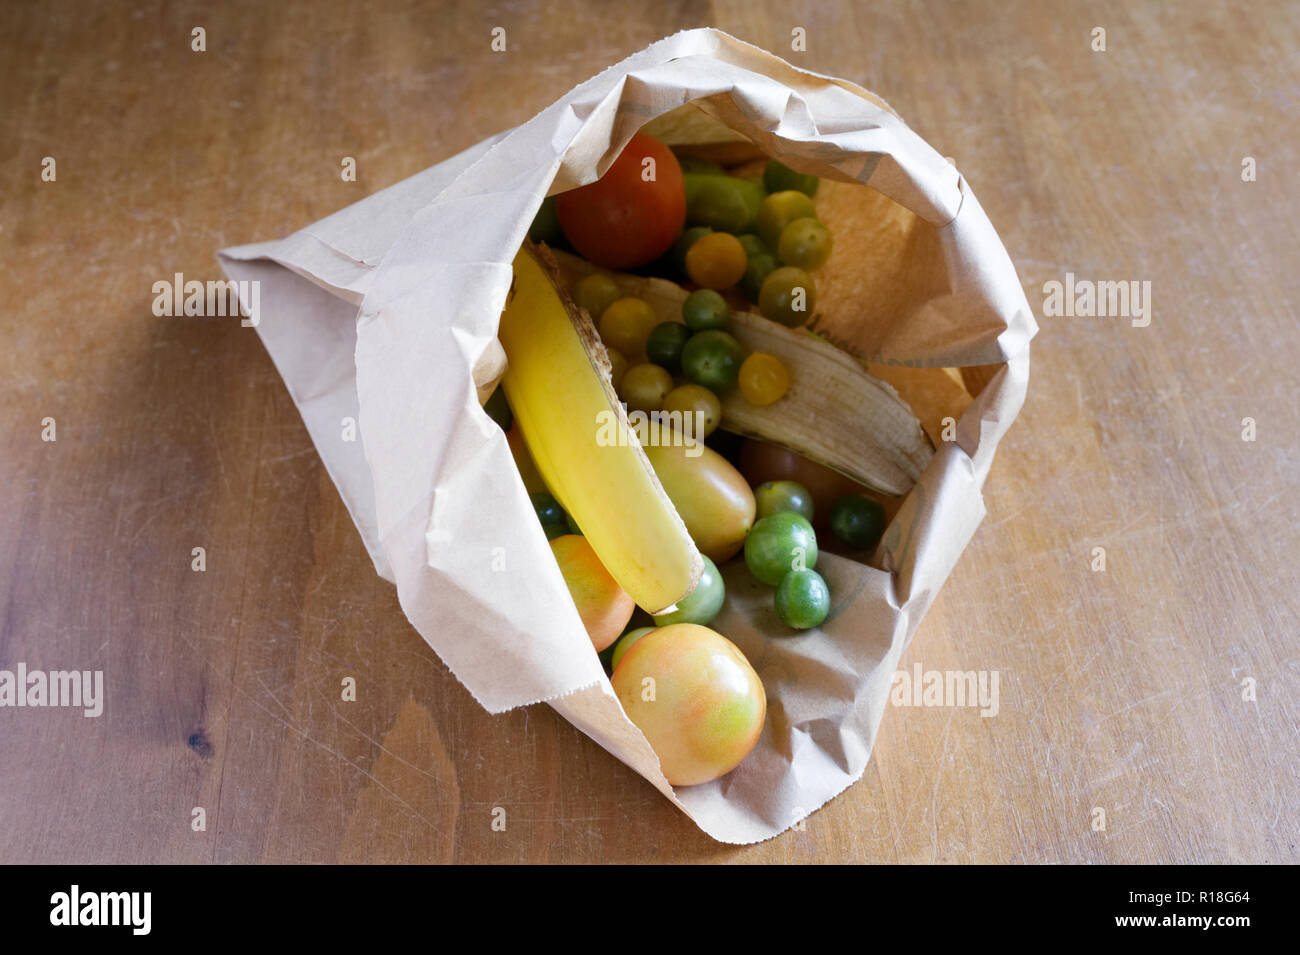 Les tomates vertes de maturation dans un sac en papier brun, avec des peaux de banane. Banque D'Images